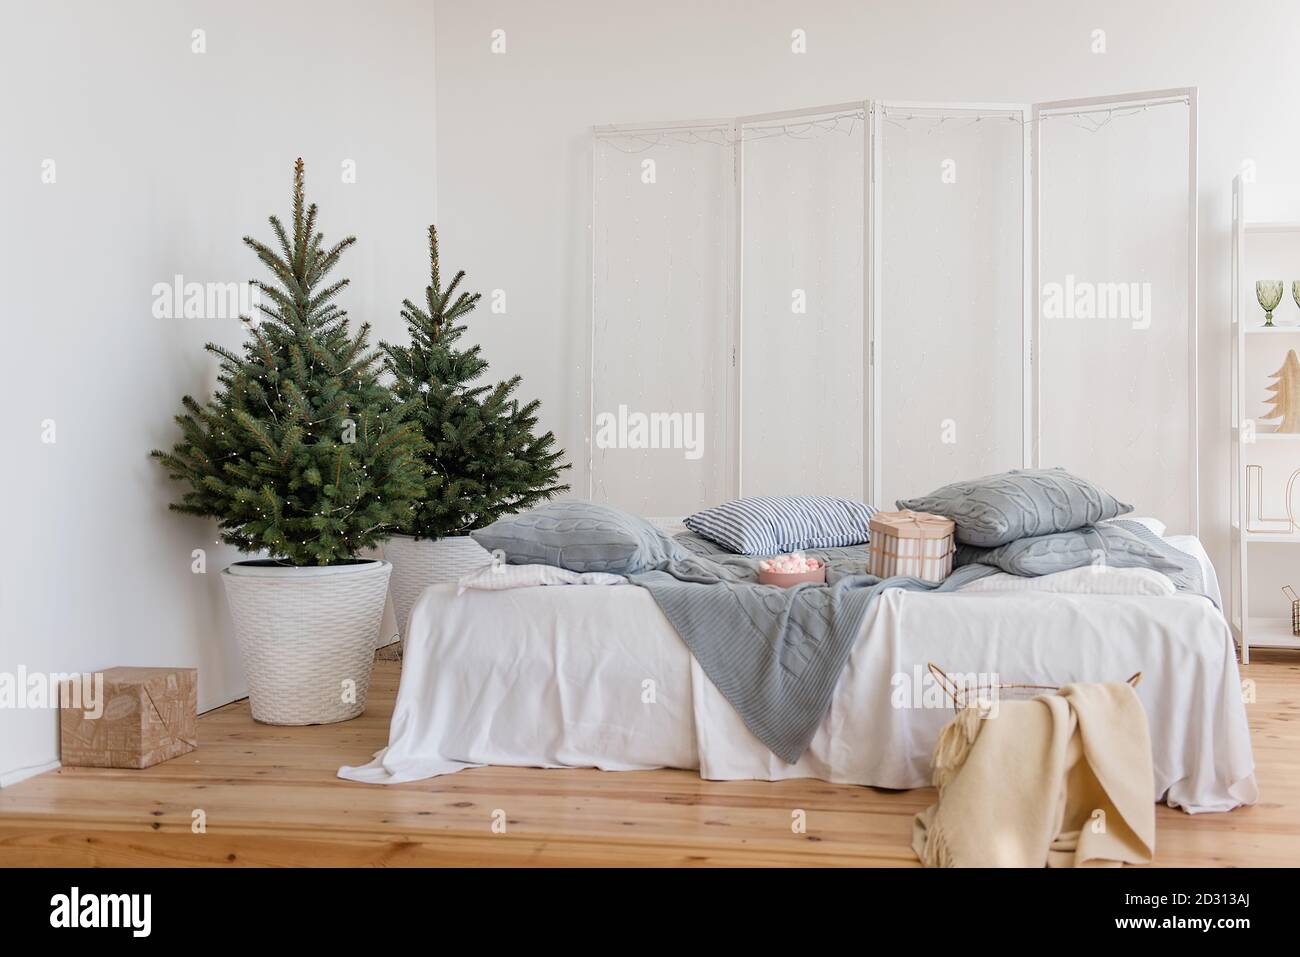 Chambre blanche élégante, minimalisme, style scandinave. Draps blancs, tissu écossais gris tricoté, oreillers. Parquet. Il y a des arbres de Noël avec guirlande Banque D'Images